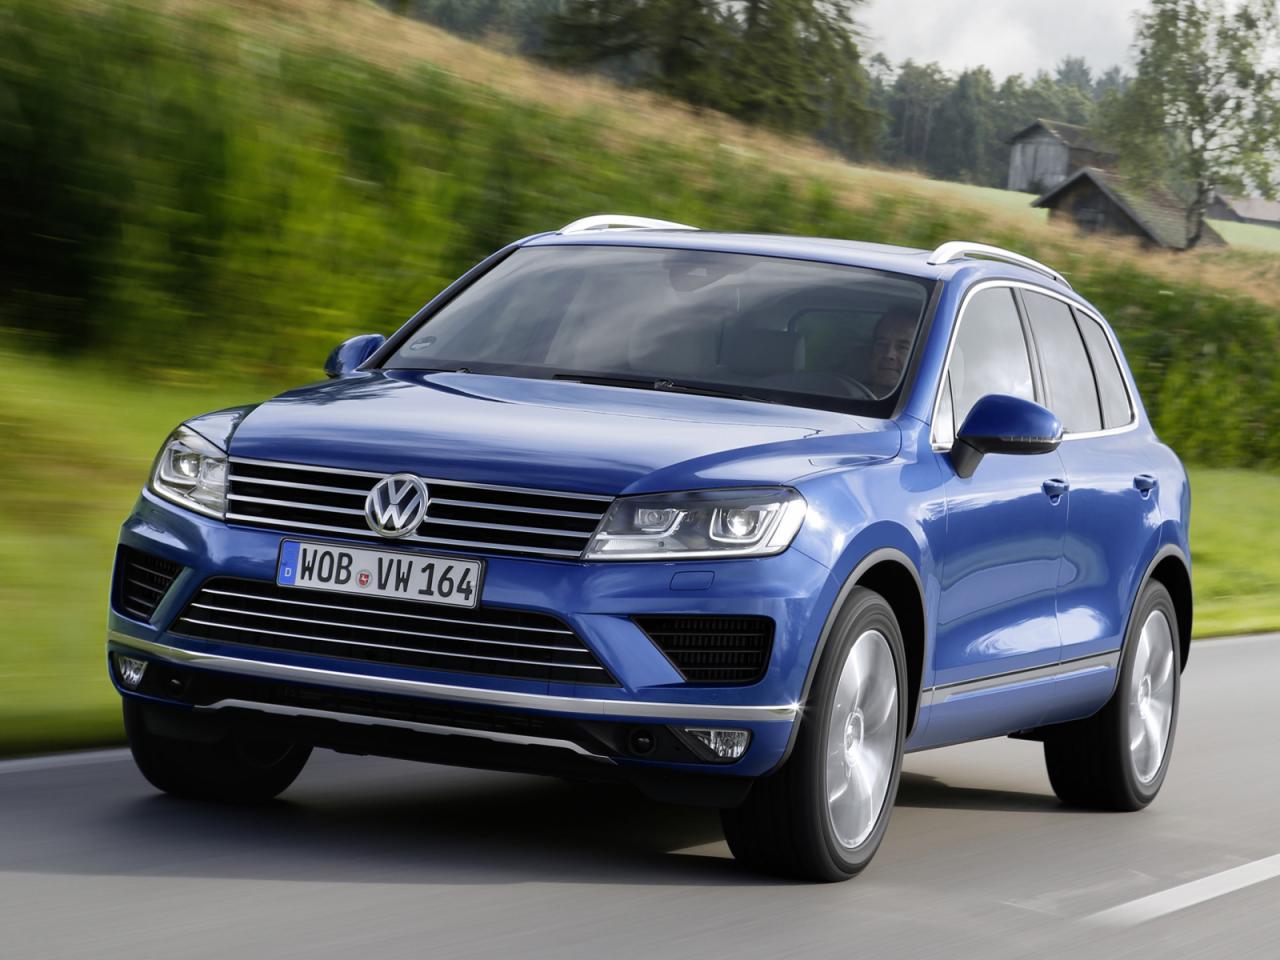 Volkswagen introduce un nuevo motor V6 TDI en el Touareg